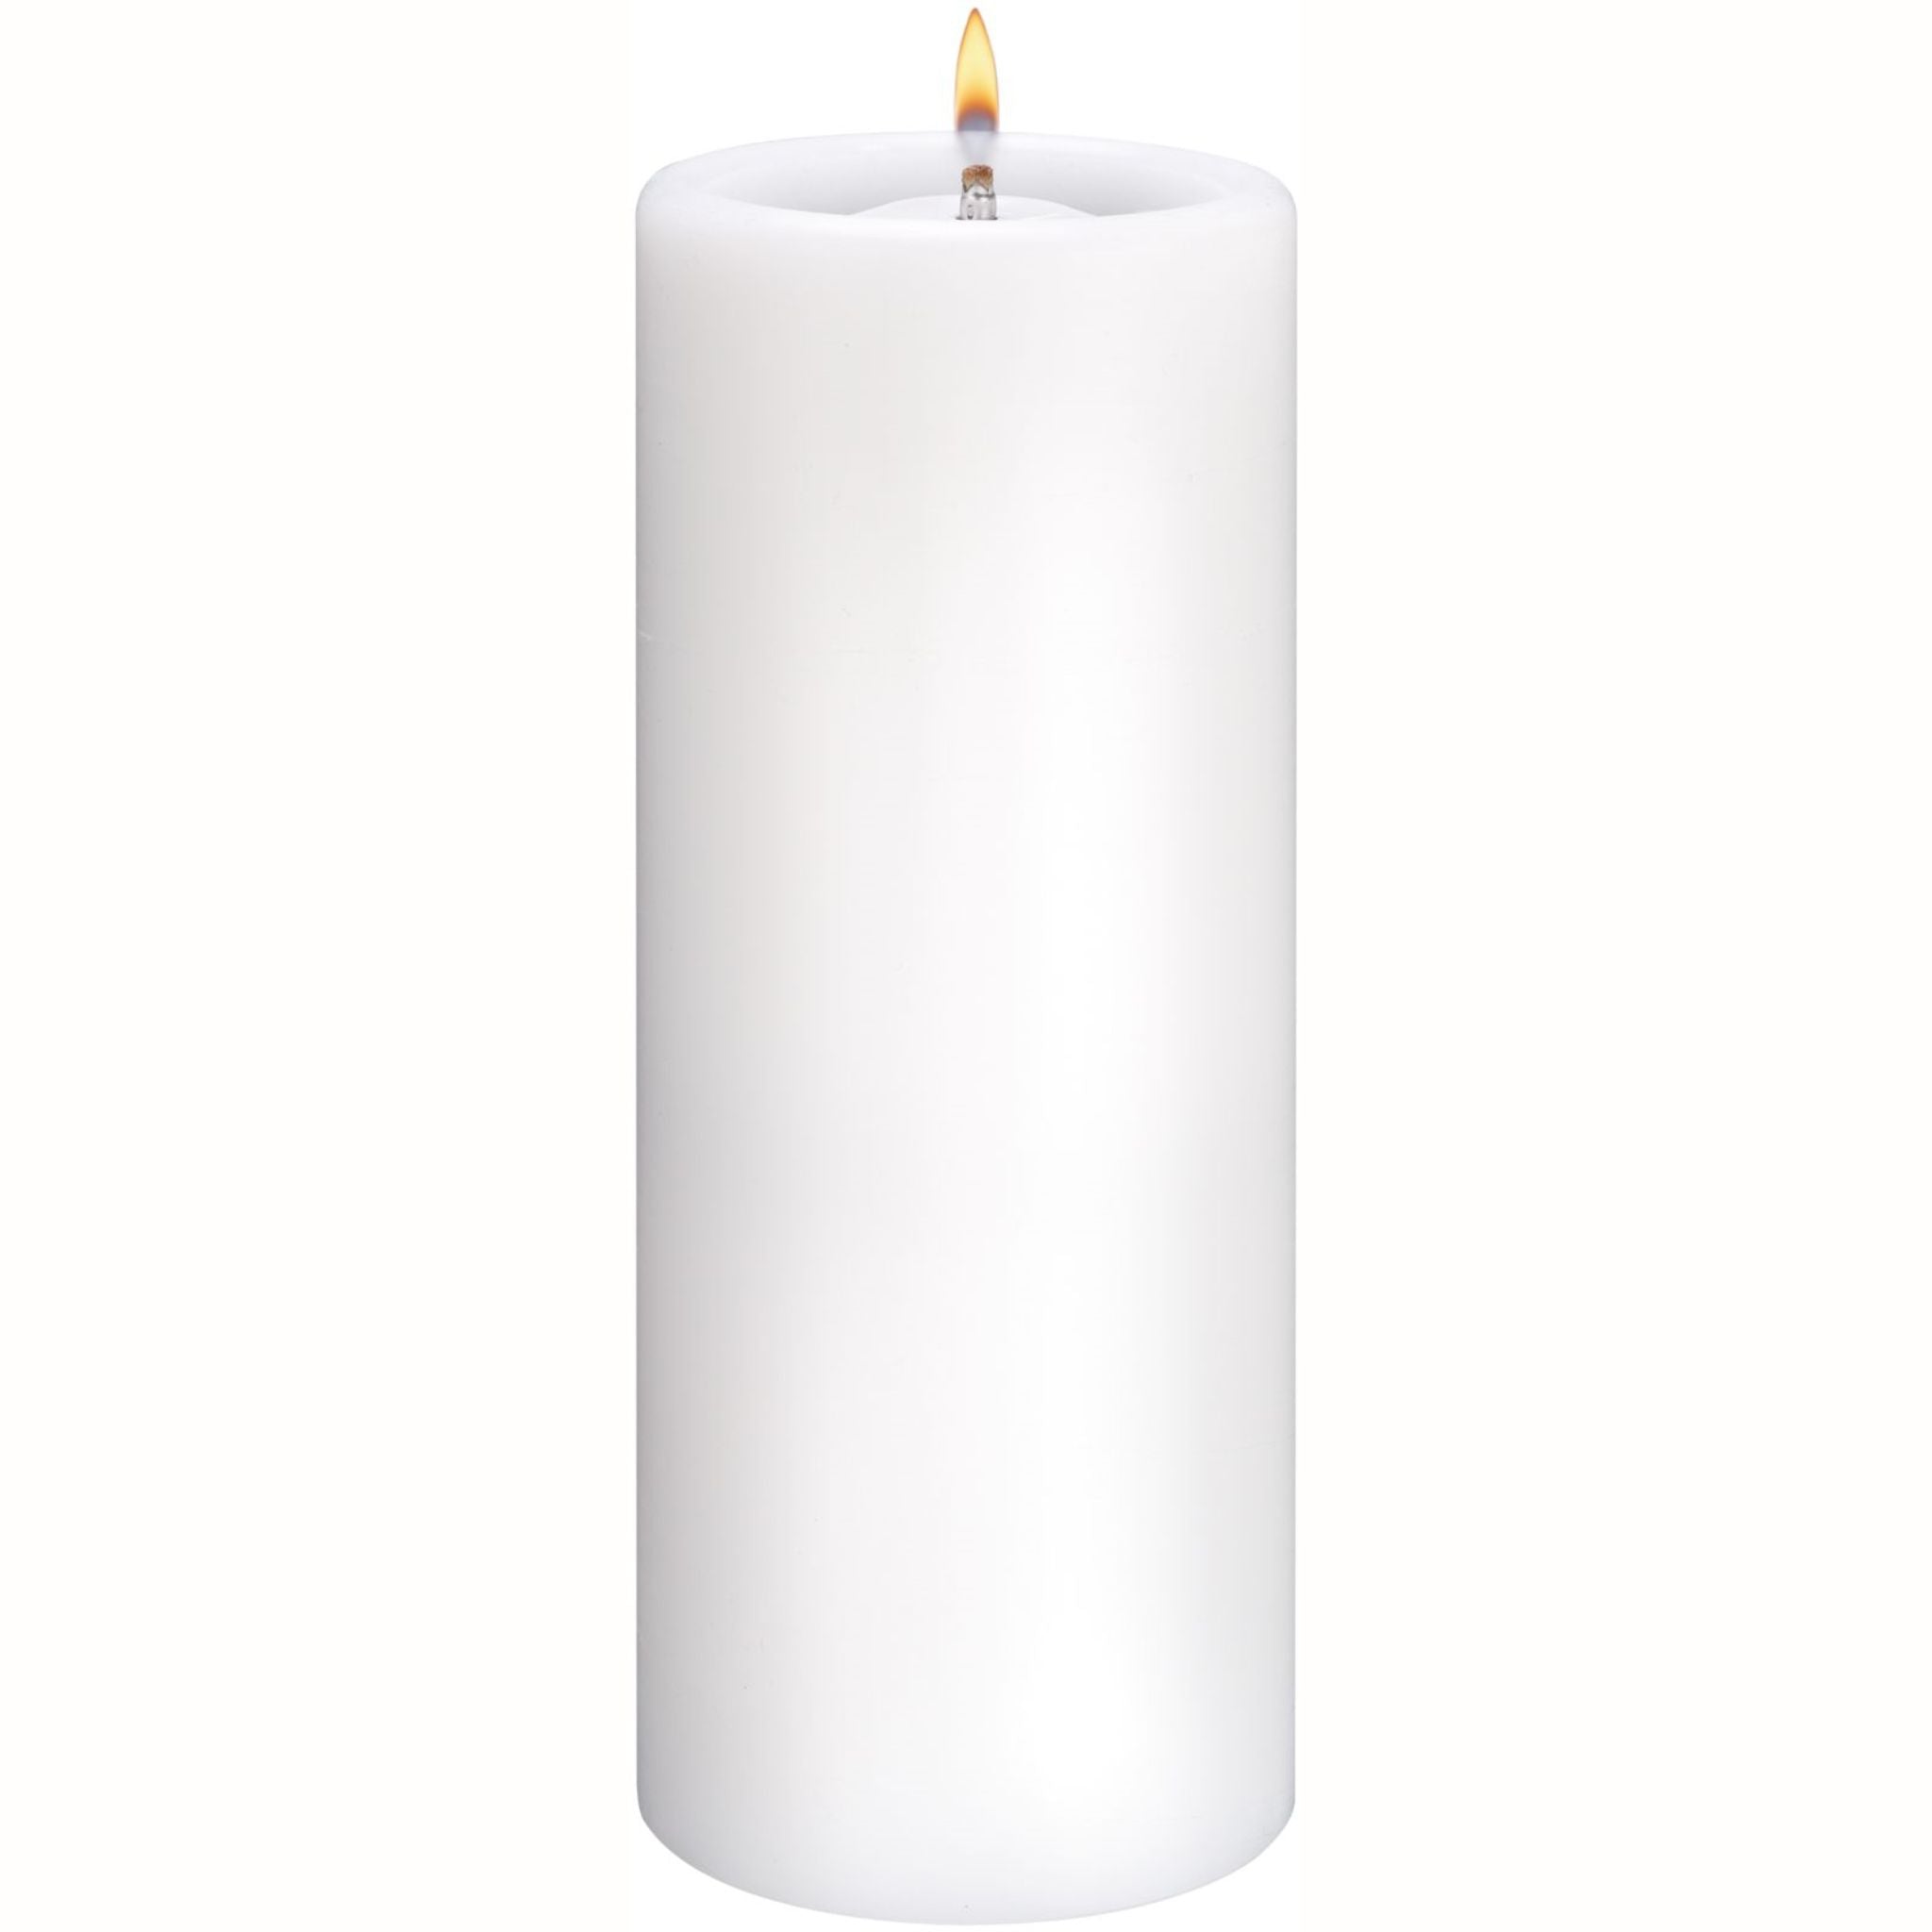 Safety candle for eternal burner 40AL